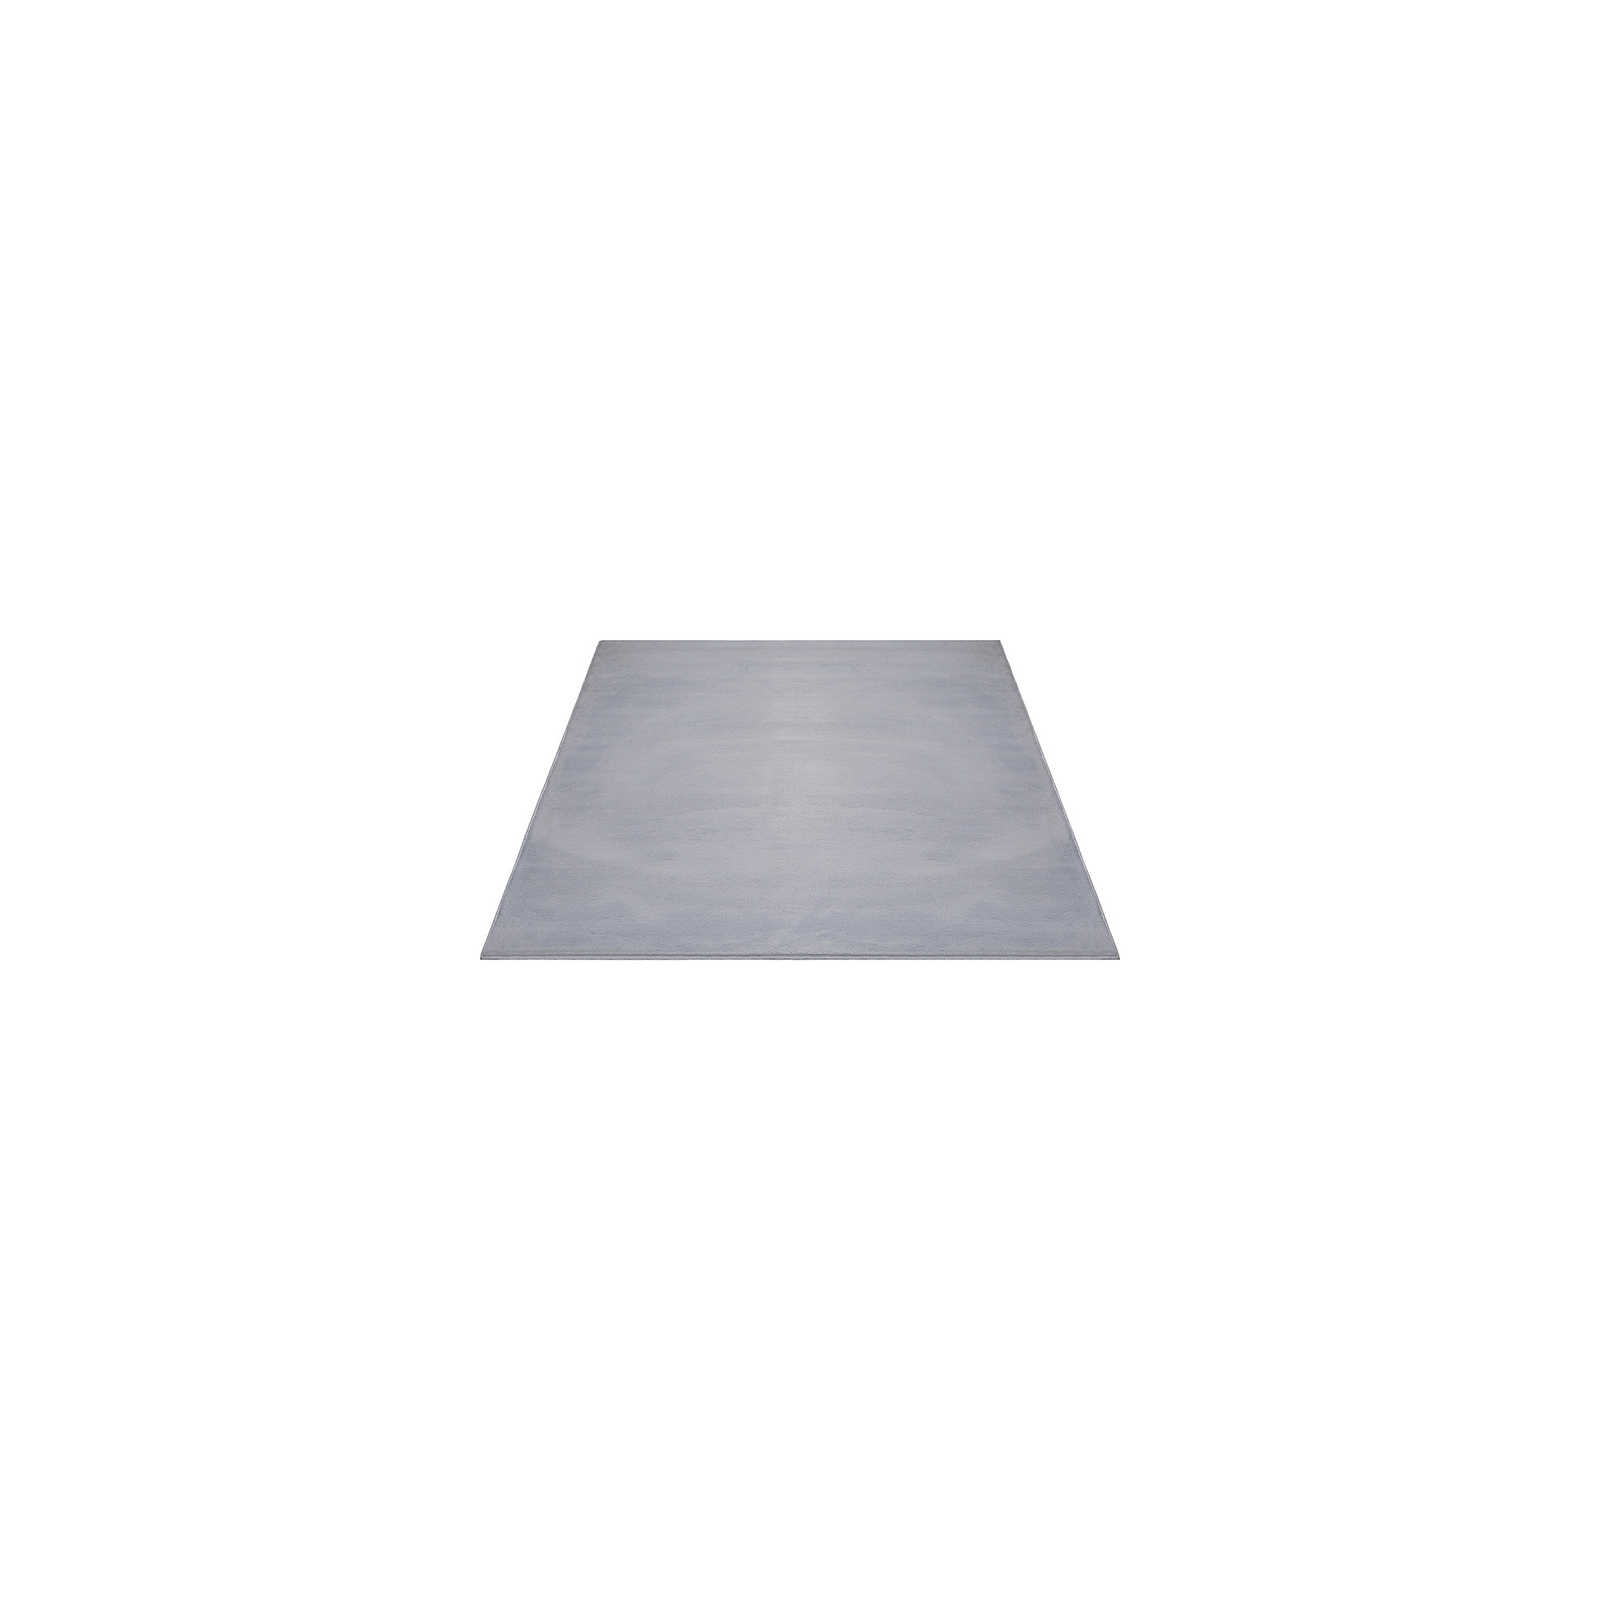 Confortevole tappeto a pelo alto in morbido grigio - 140 x 70 cm
